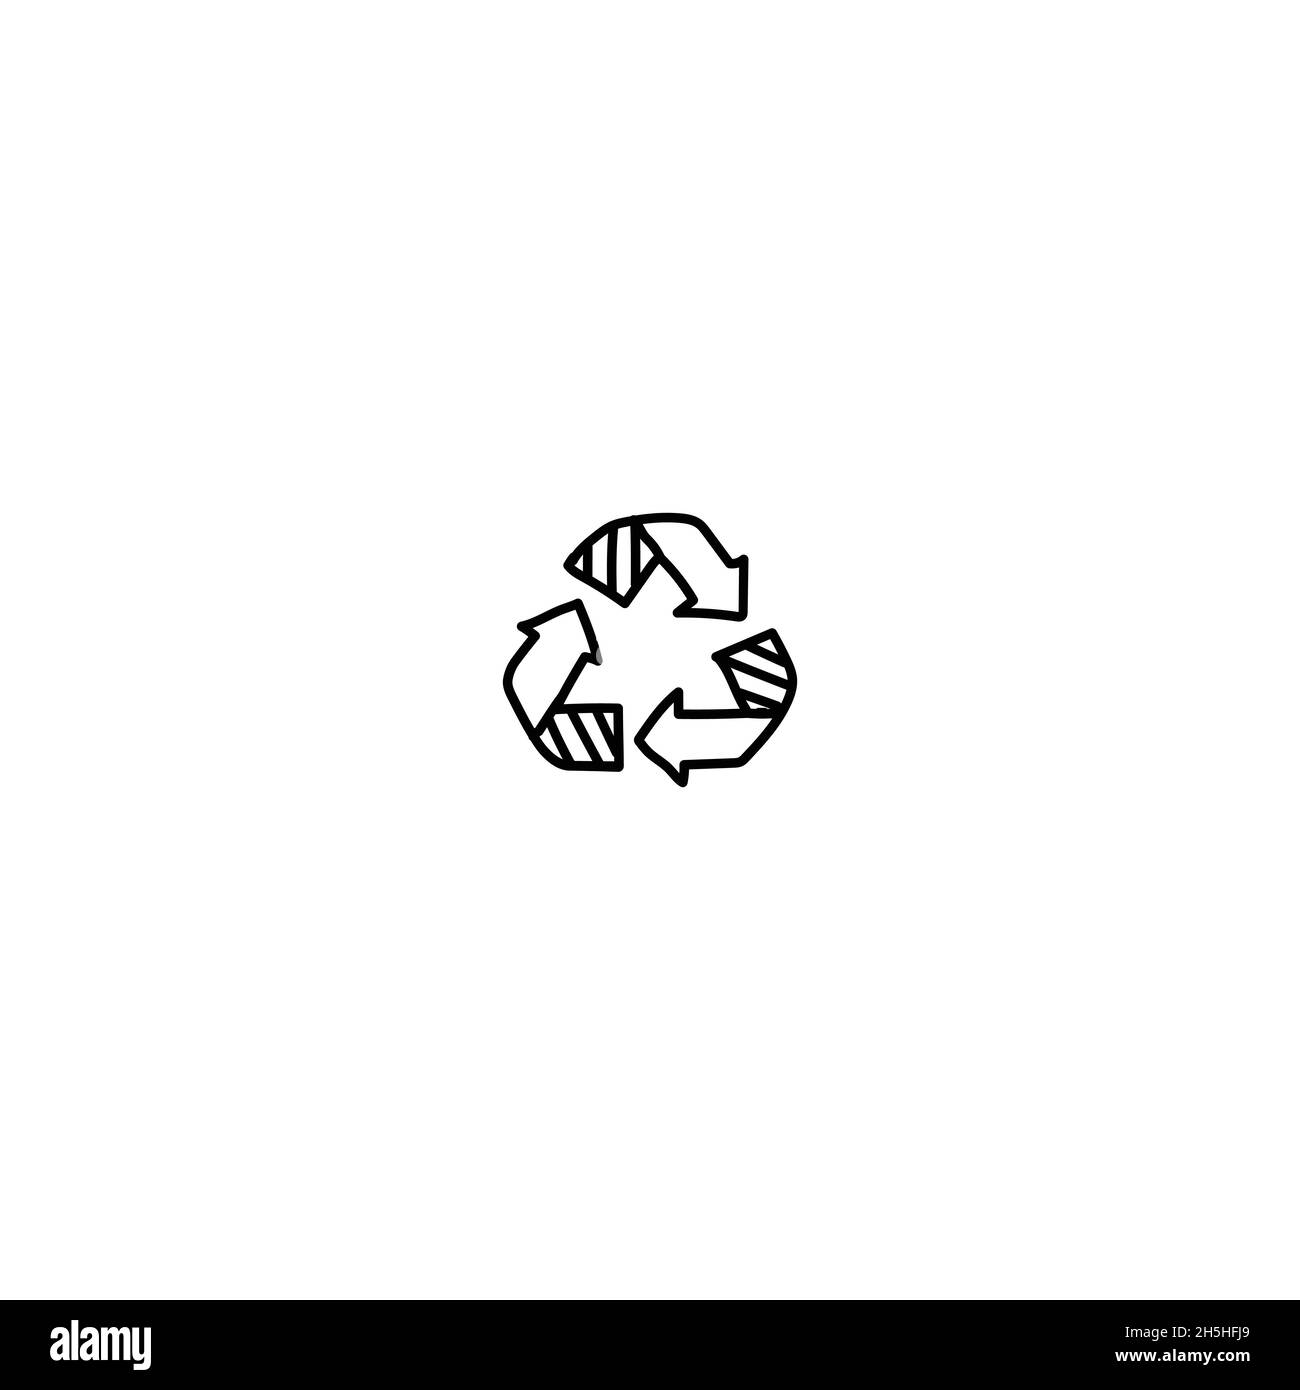 Handgezeichnetes Eco-Zeichen-Symbol für Doodle-Illustration. Skizzieren Sie handgezeichnete eco, umweltfreundliche Artikel Vektor-Symbol-Illustrationen isoliert auf weißem Hintergrund. Stock Vektor